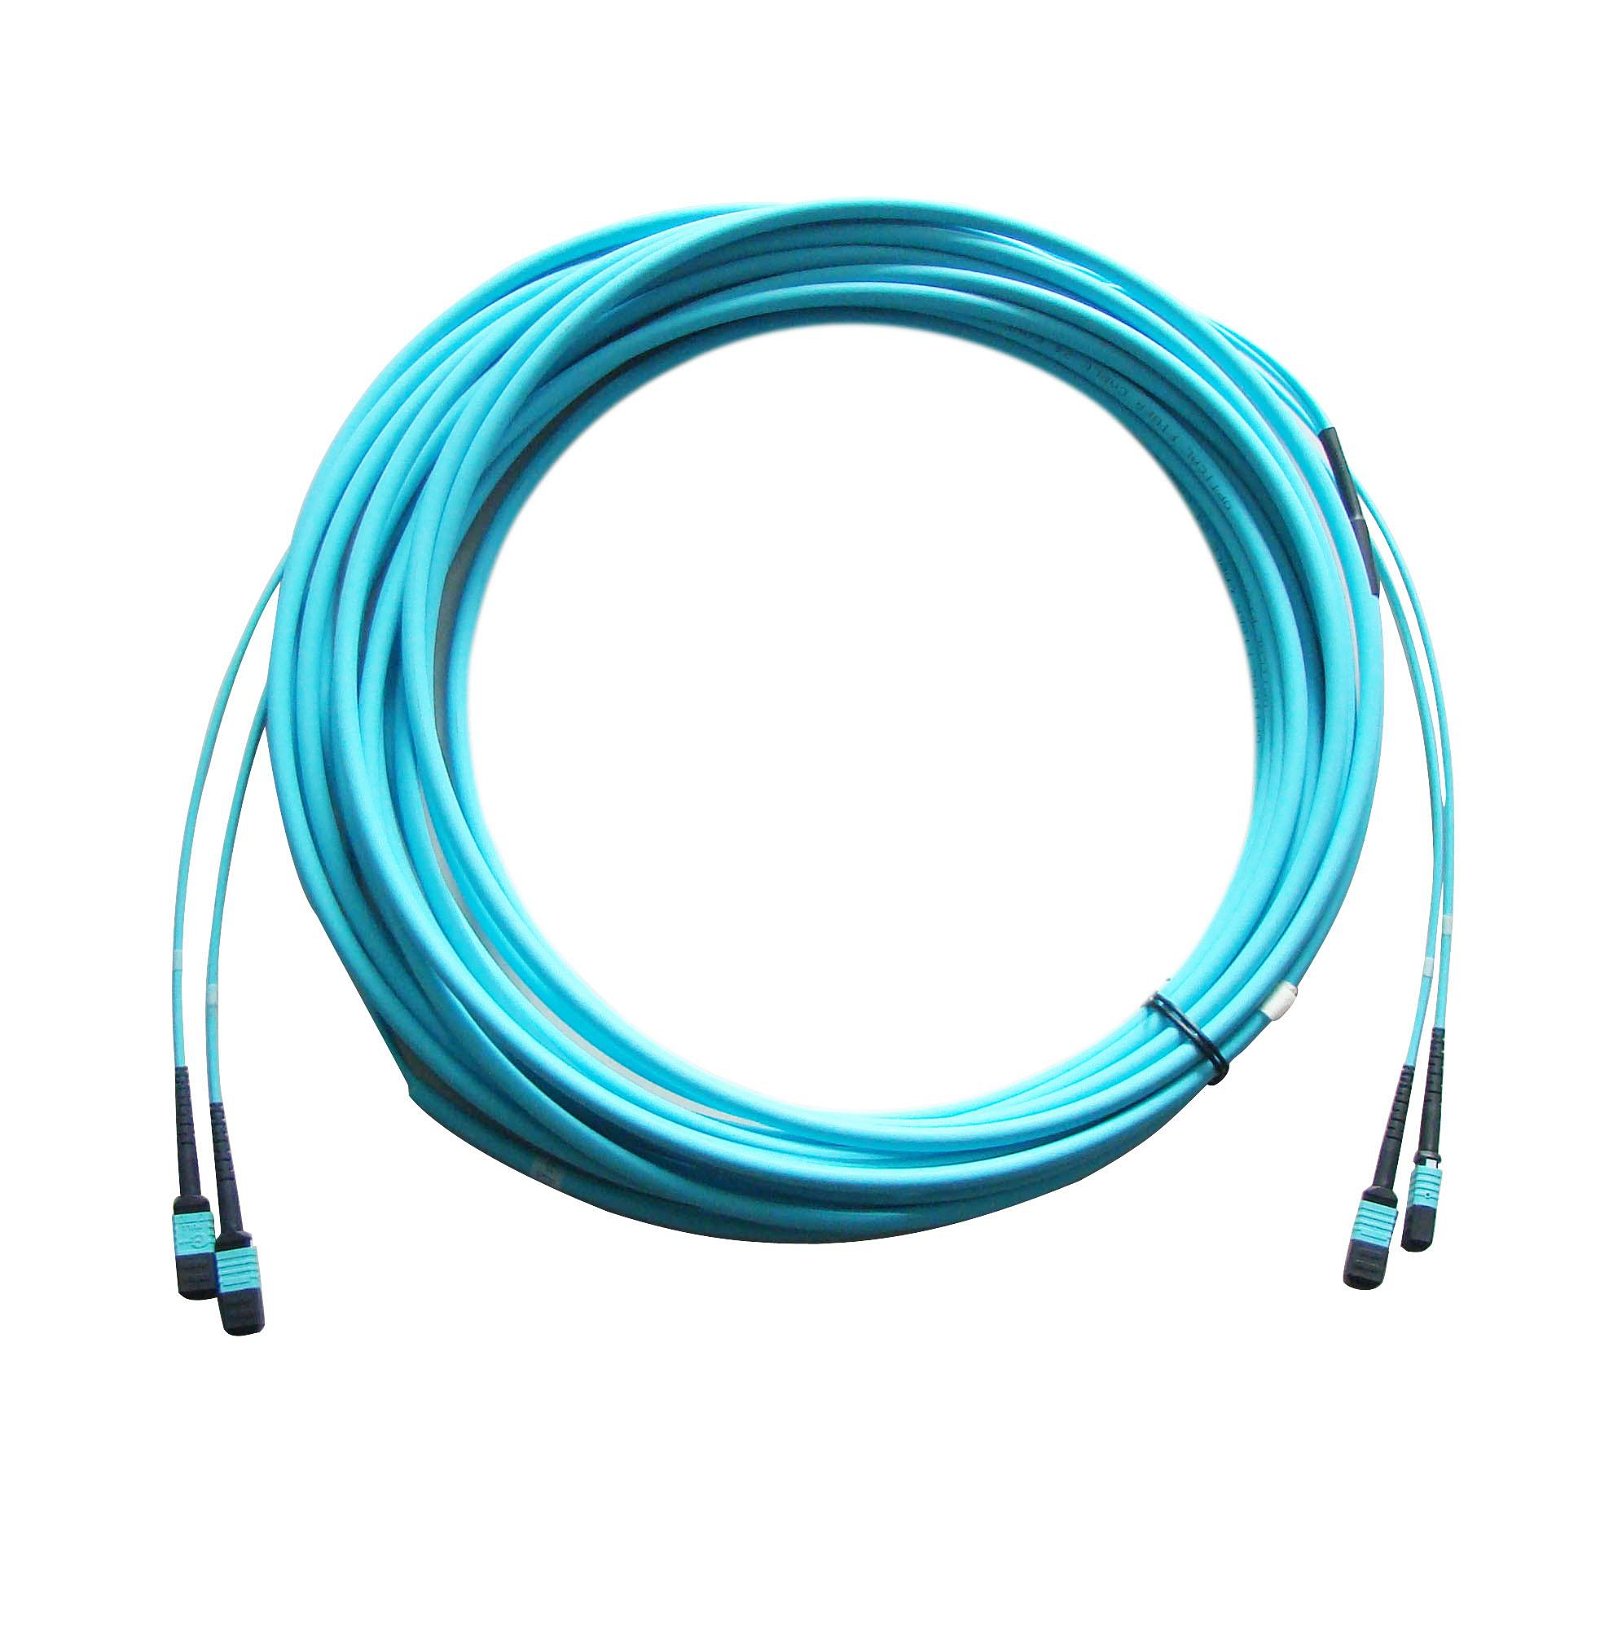 24-core MPO fiber optic patch cord